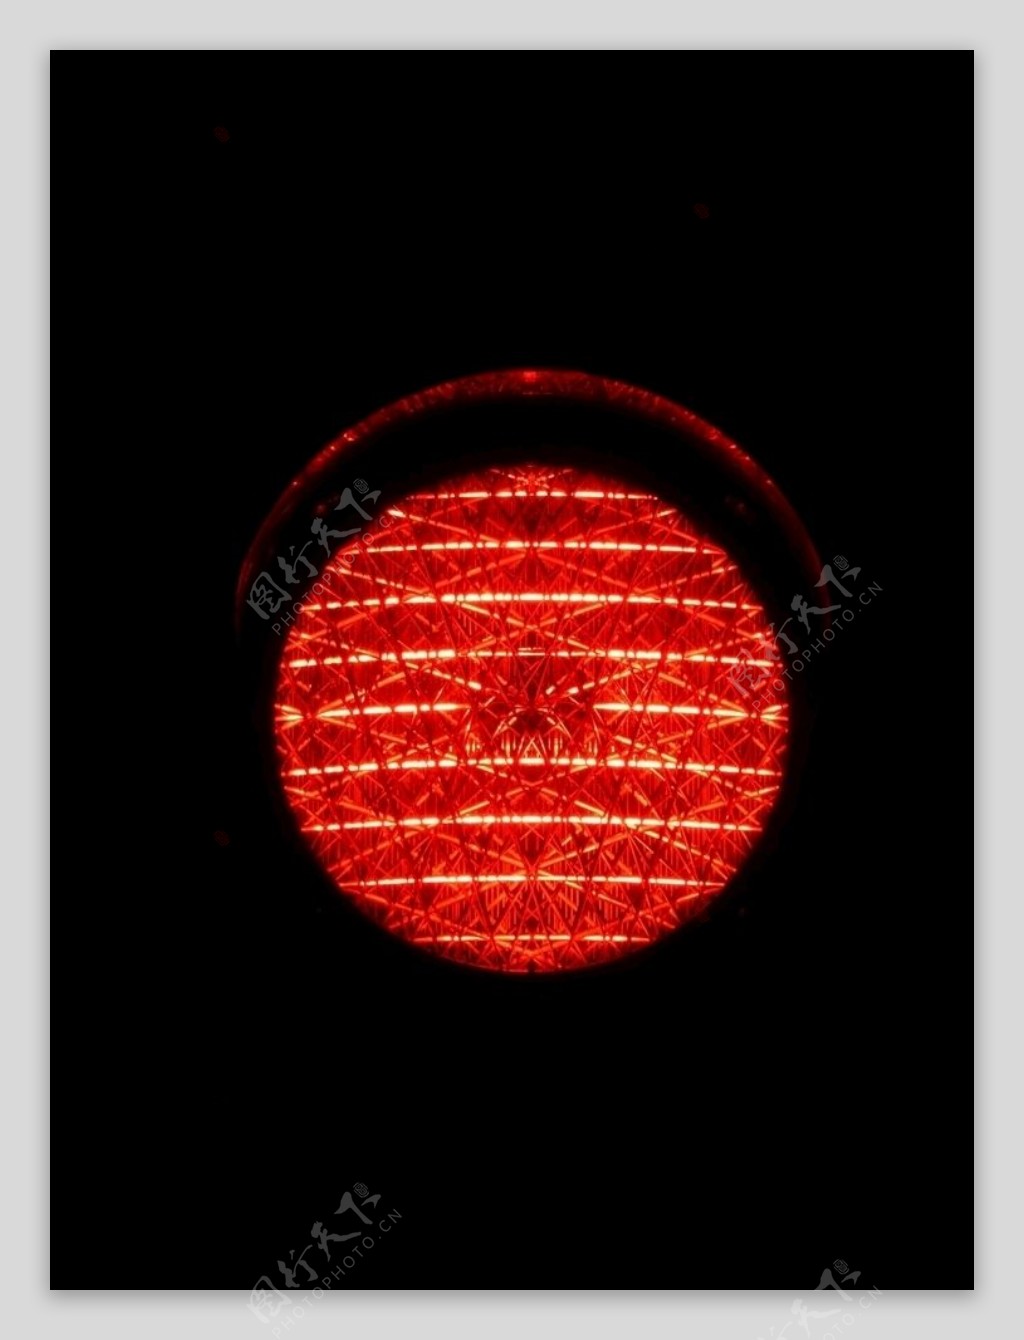 红色信号灯